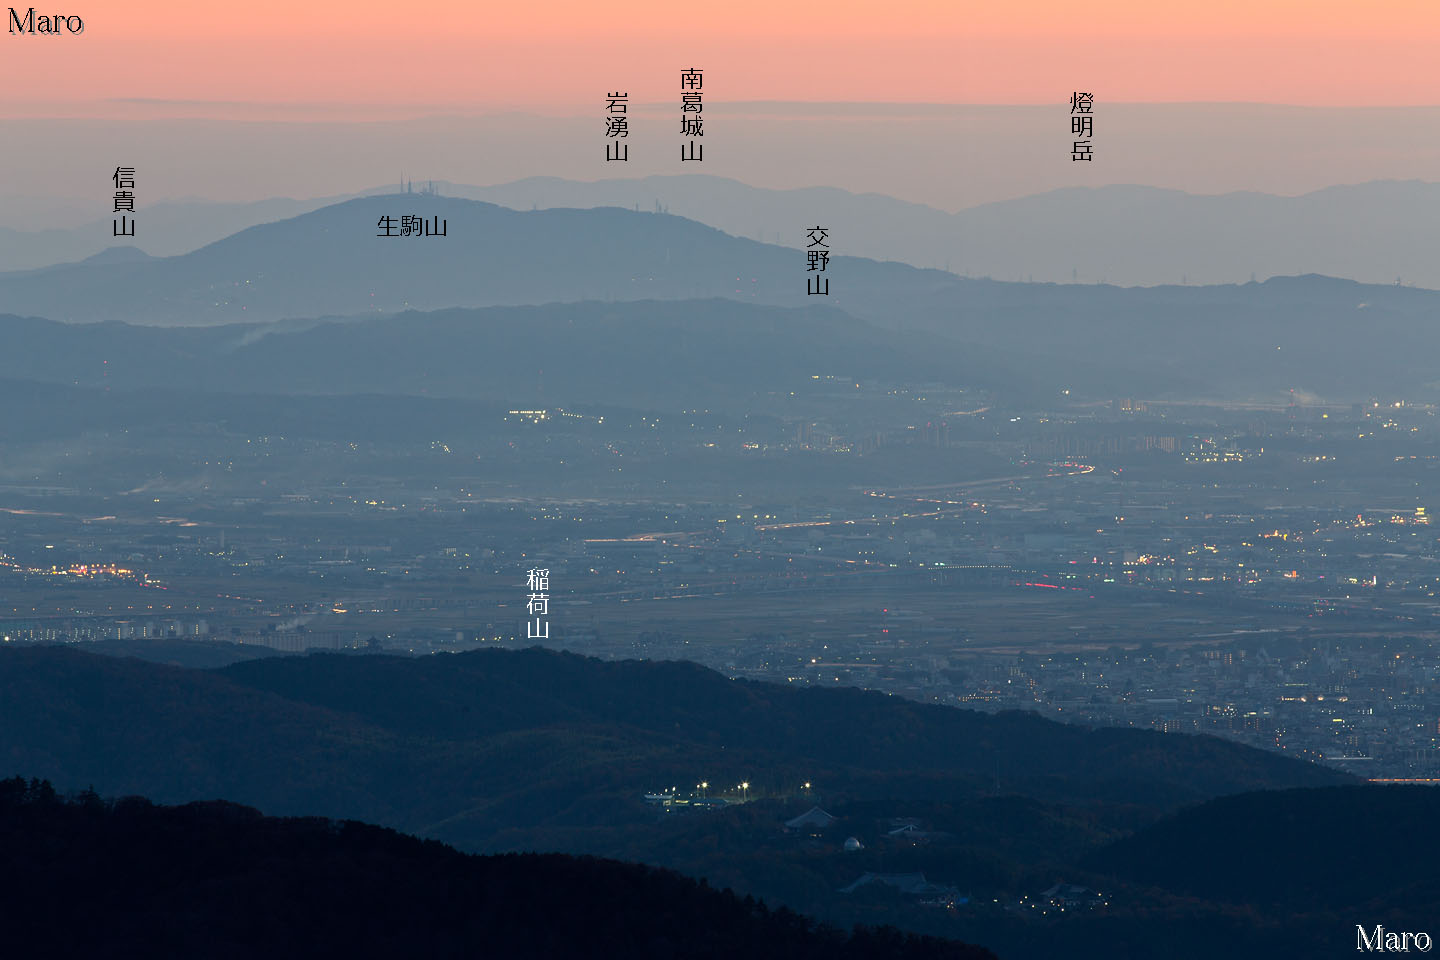 比叡山 四明岳から生駒山 交野山 遠くに和泉山脈の山々を望む 12年11月 きょうのまなざし